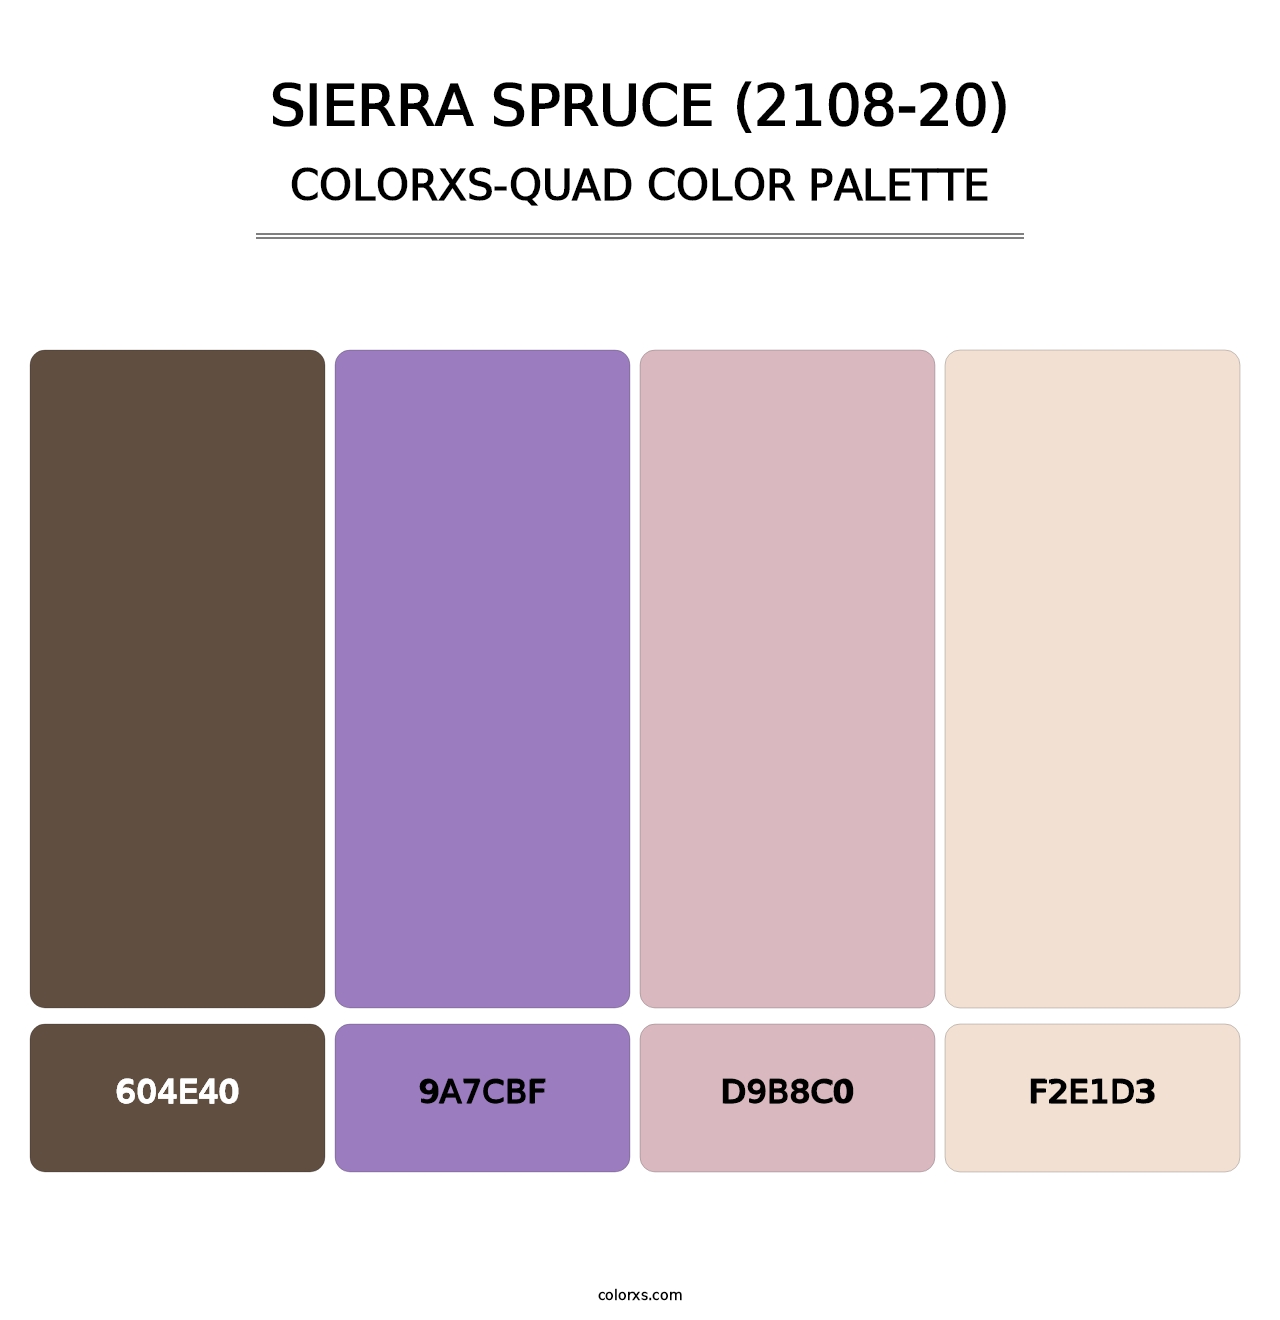 Sierra Spruce (2108-20) - Colorxs Quad Palette